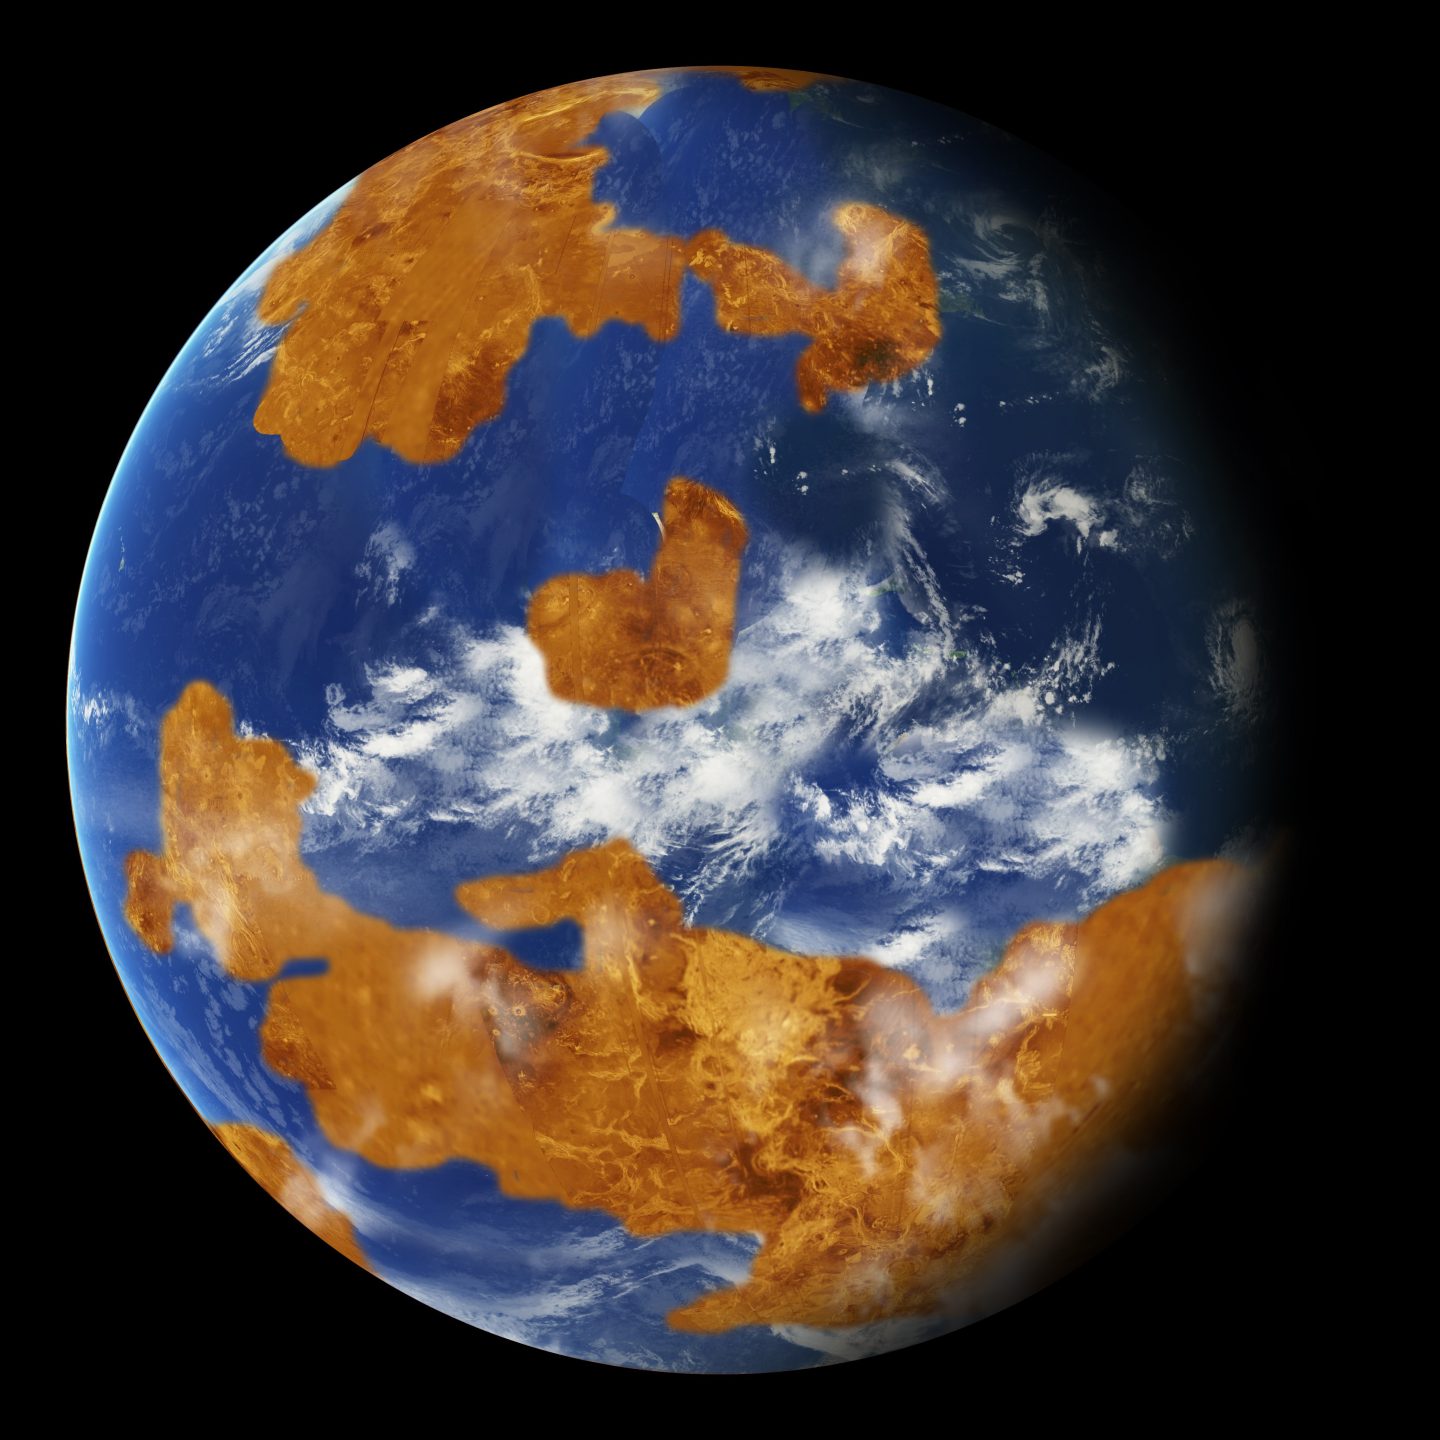 Venus may once have held watery oceans.